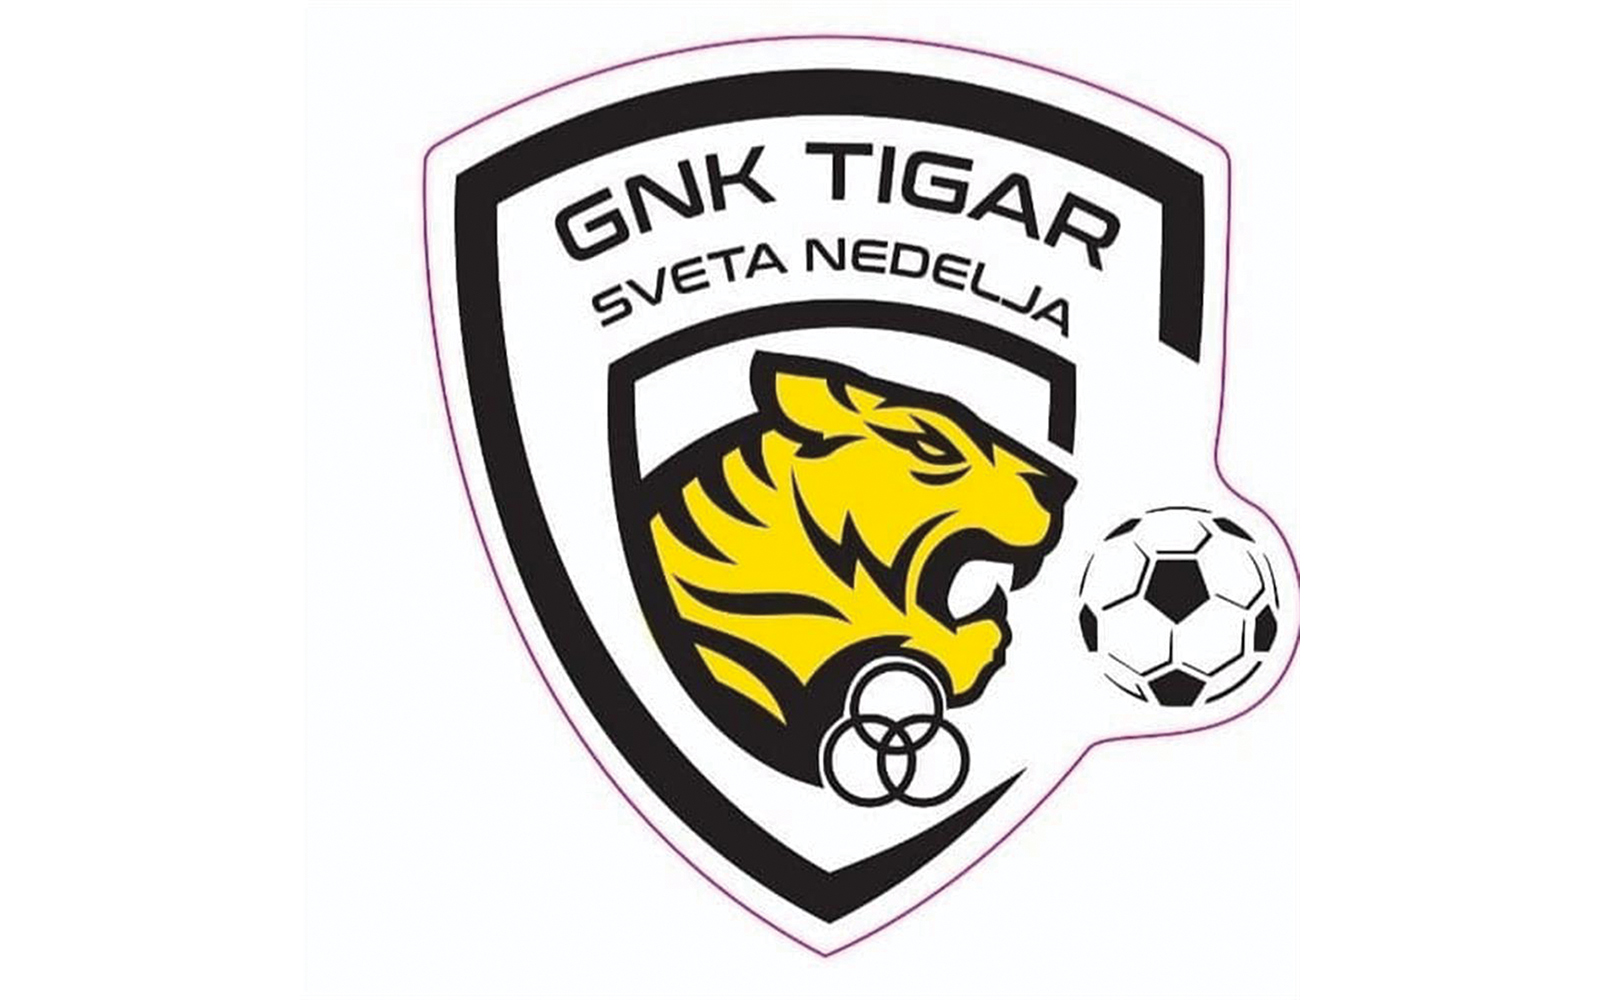 4. nogometna liga sredite Zagreb  B - 4. kolo
GNK Tigar Sveta Nedjelja  TOP 3:0 (1:0)